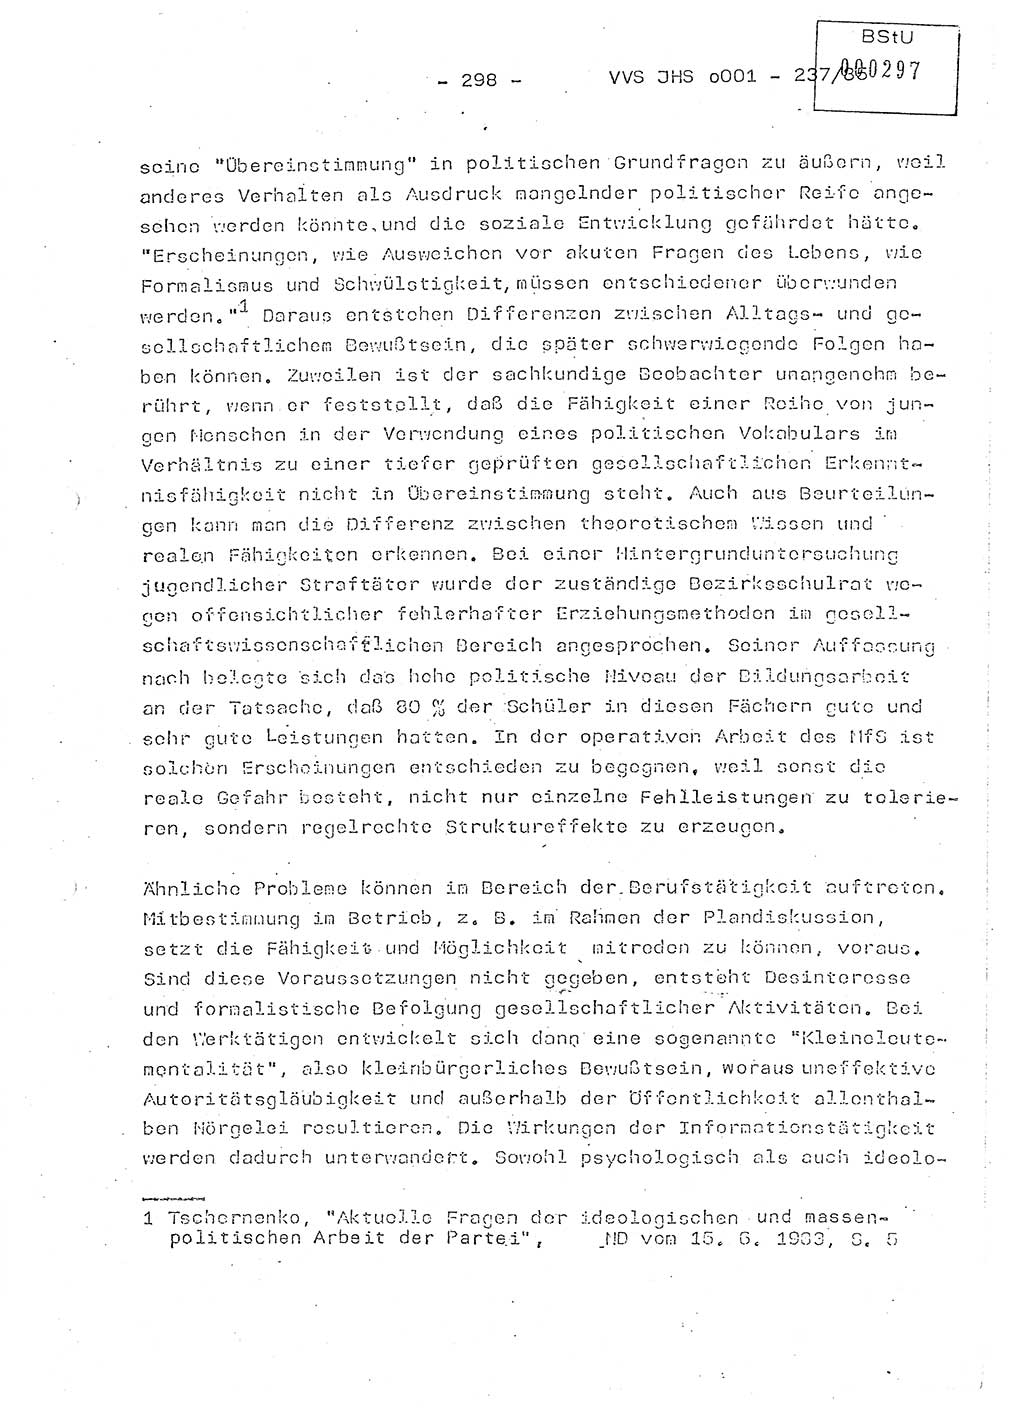 Dissertation Oberstleutnant Peter Jakulski (JHS), Oberstleutnat Christian Rudolph (HA Ⅸ), Major Horst Böttger (ZMD), Major Wolfgang Grüneberg (JHS), Major Albert Meutsch (JHS), Ministerium für Staatssicherheit (MfS) [Deutsche Demokratische Republik (DDR)], Juristische Hochschule (JHS), Vertrauliche Verschlußsache (VVS) o001-237/85, Potsdam 1985, Seite 298 (Diss. MfS DDR JHS VVS o001-237/85 1985, S. 298)